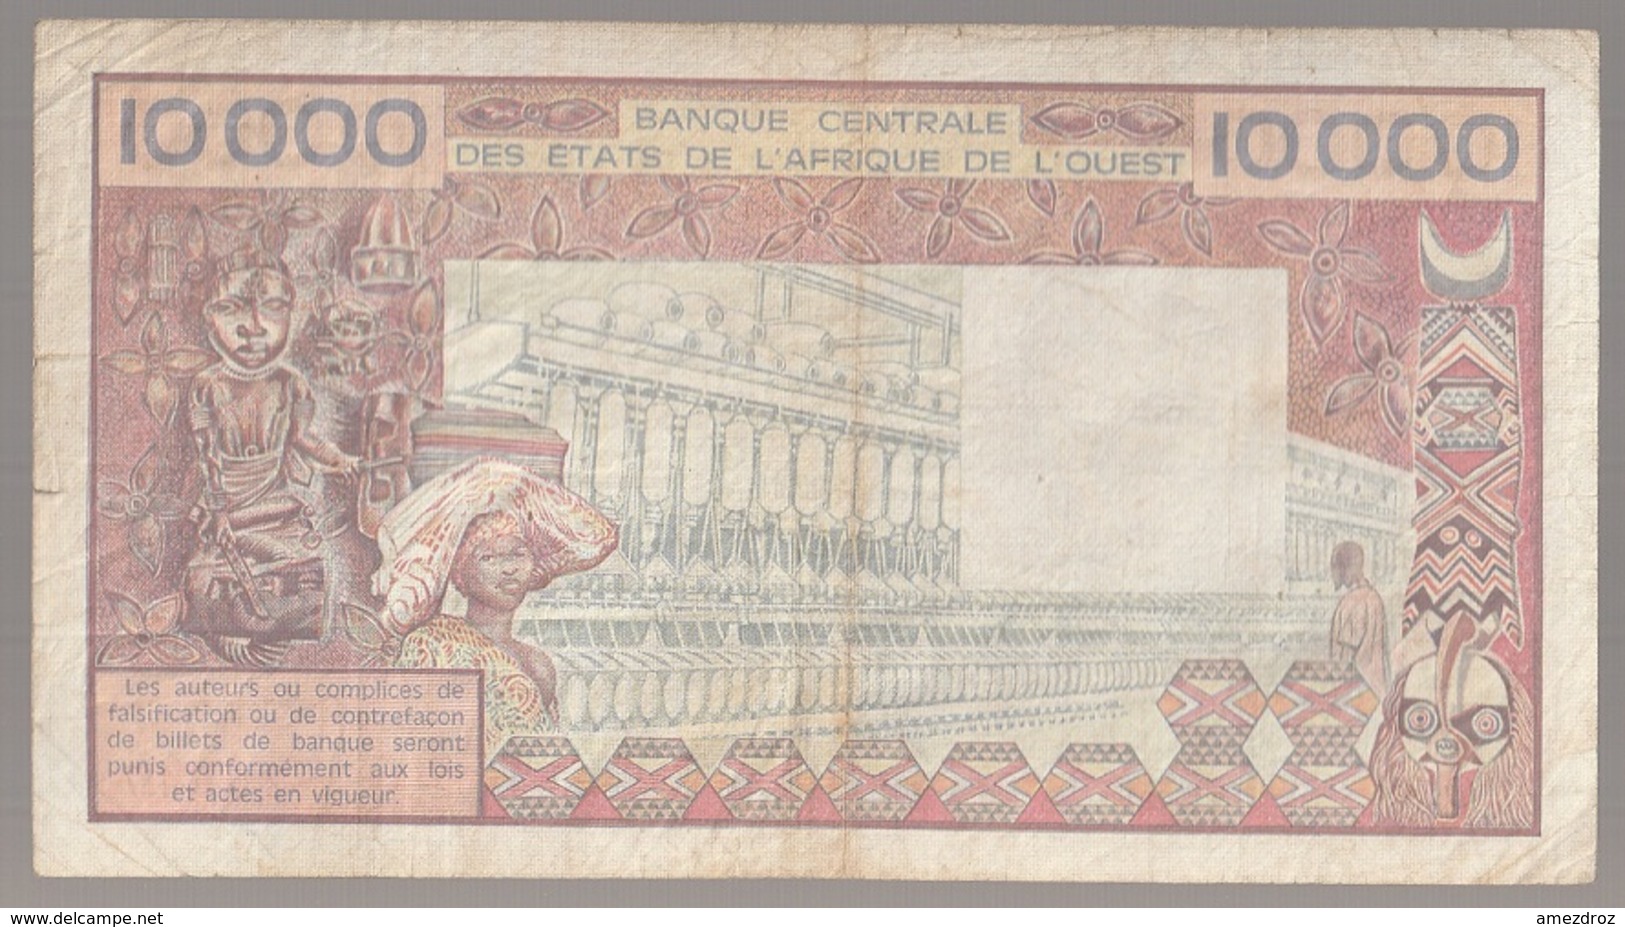 Côte D'Ivoire Billet De 10 000 Francs CFA Série D Circulé - Côte D'Ivoire